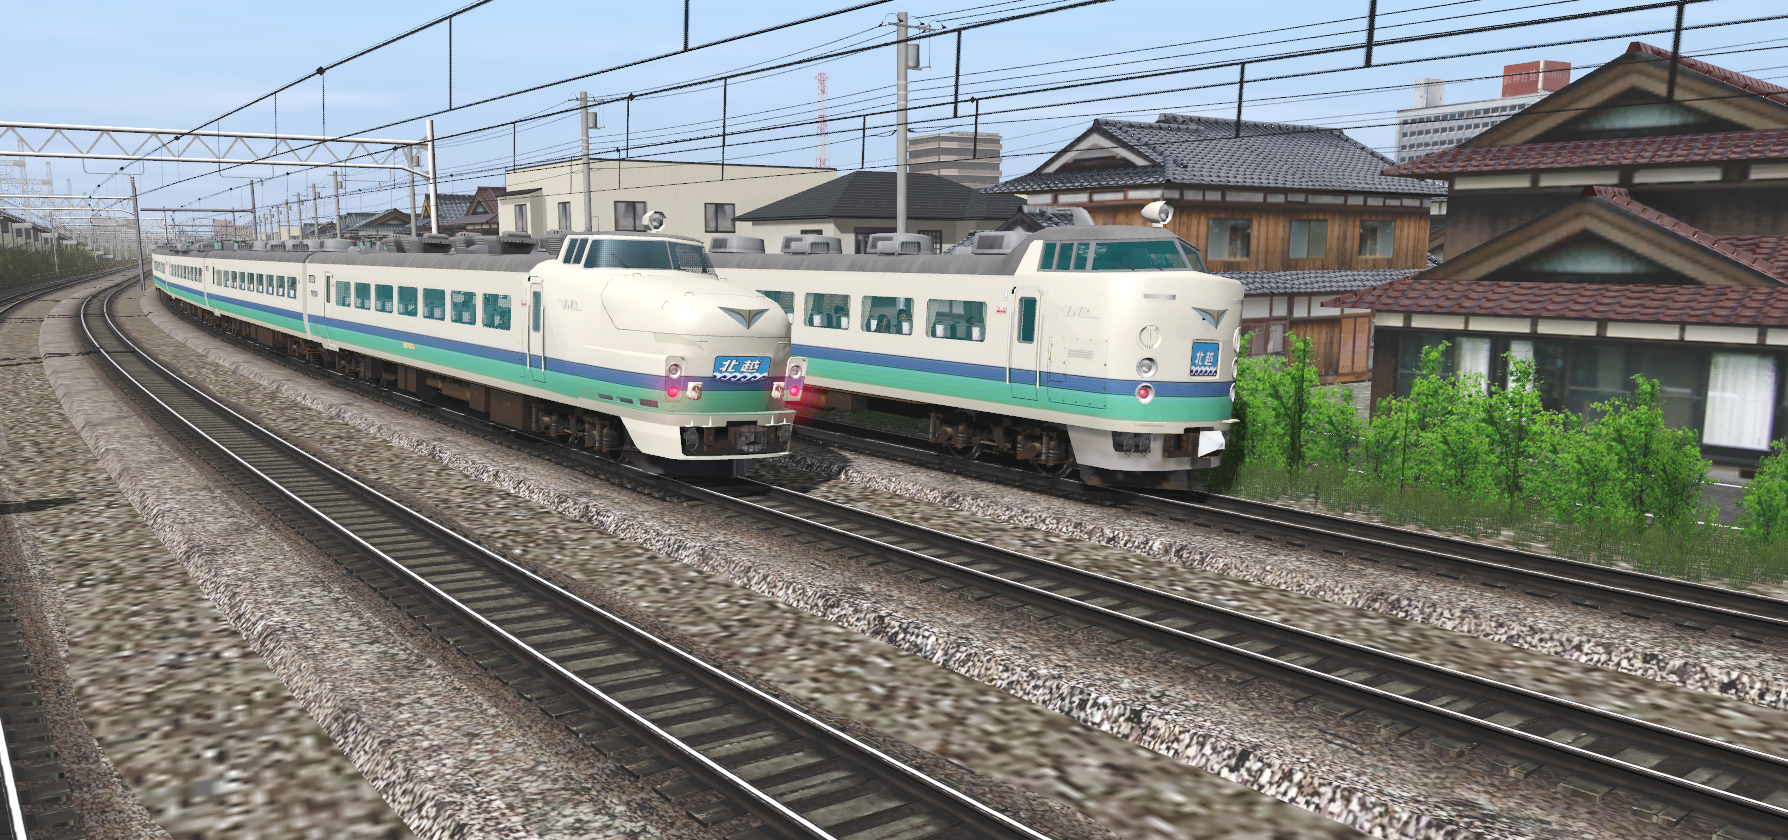 JR East 485 Series - Niigata Depot livery - Socimi